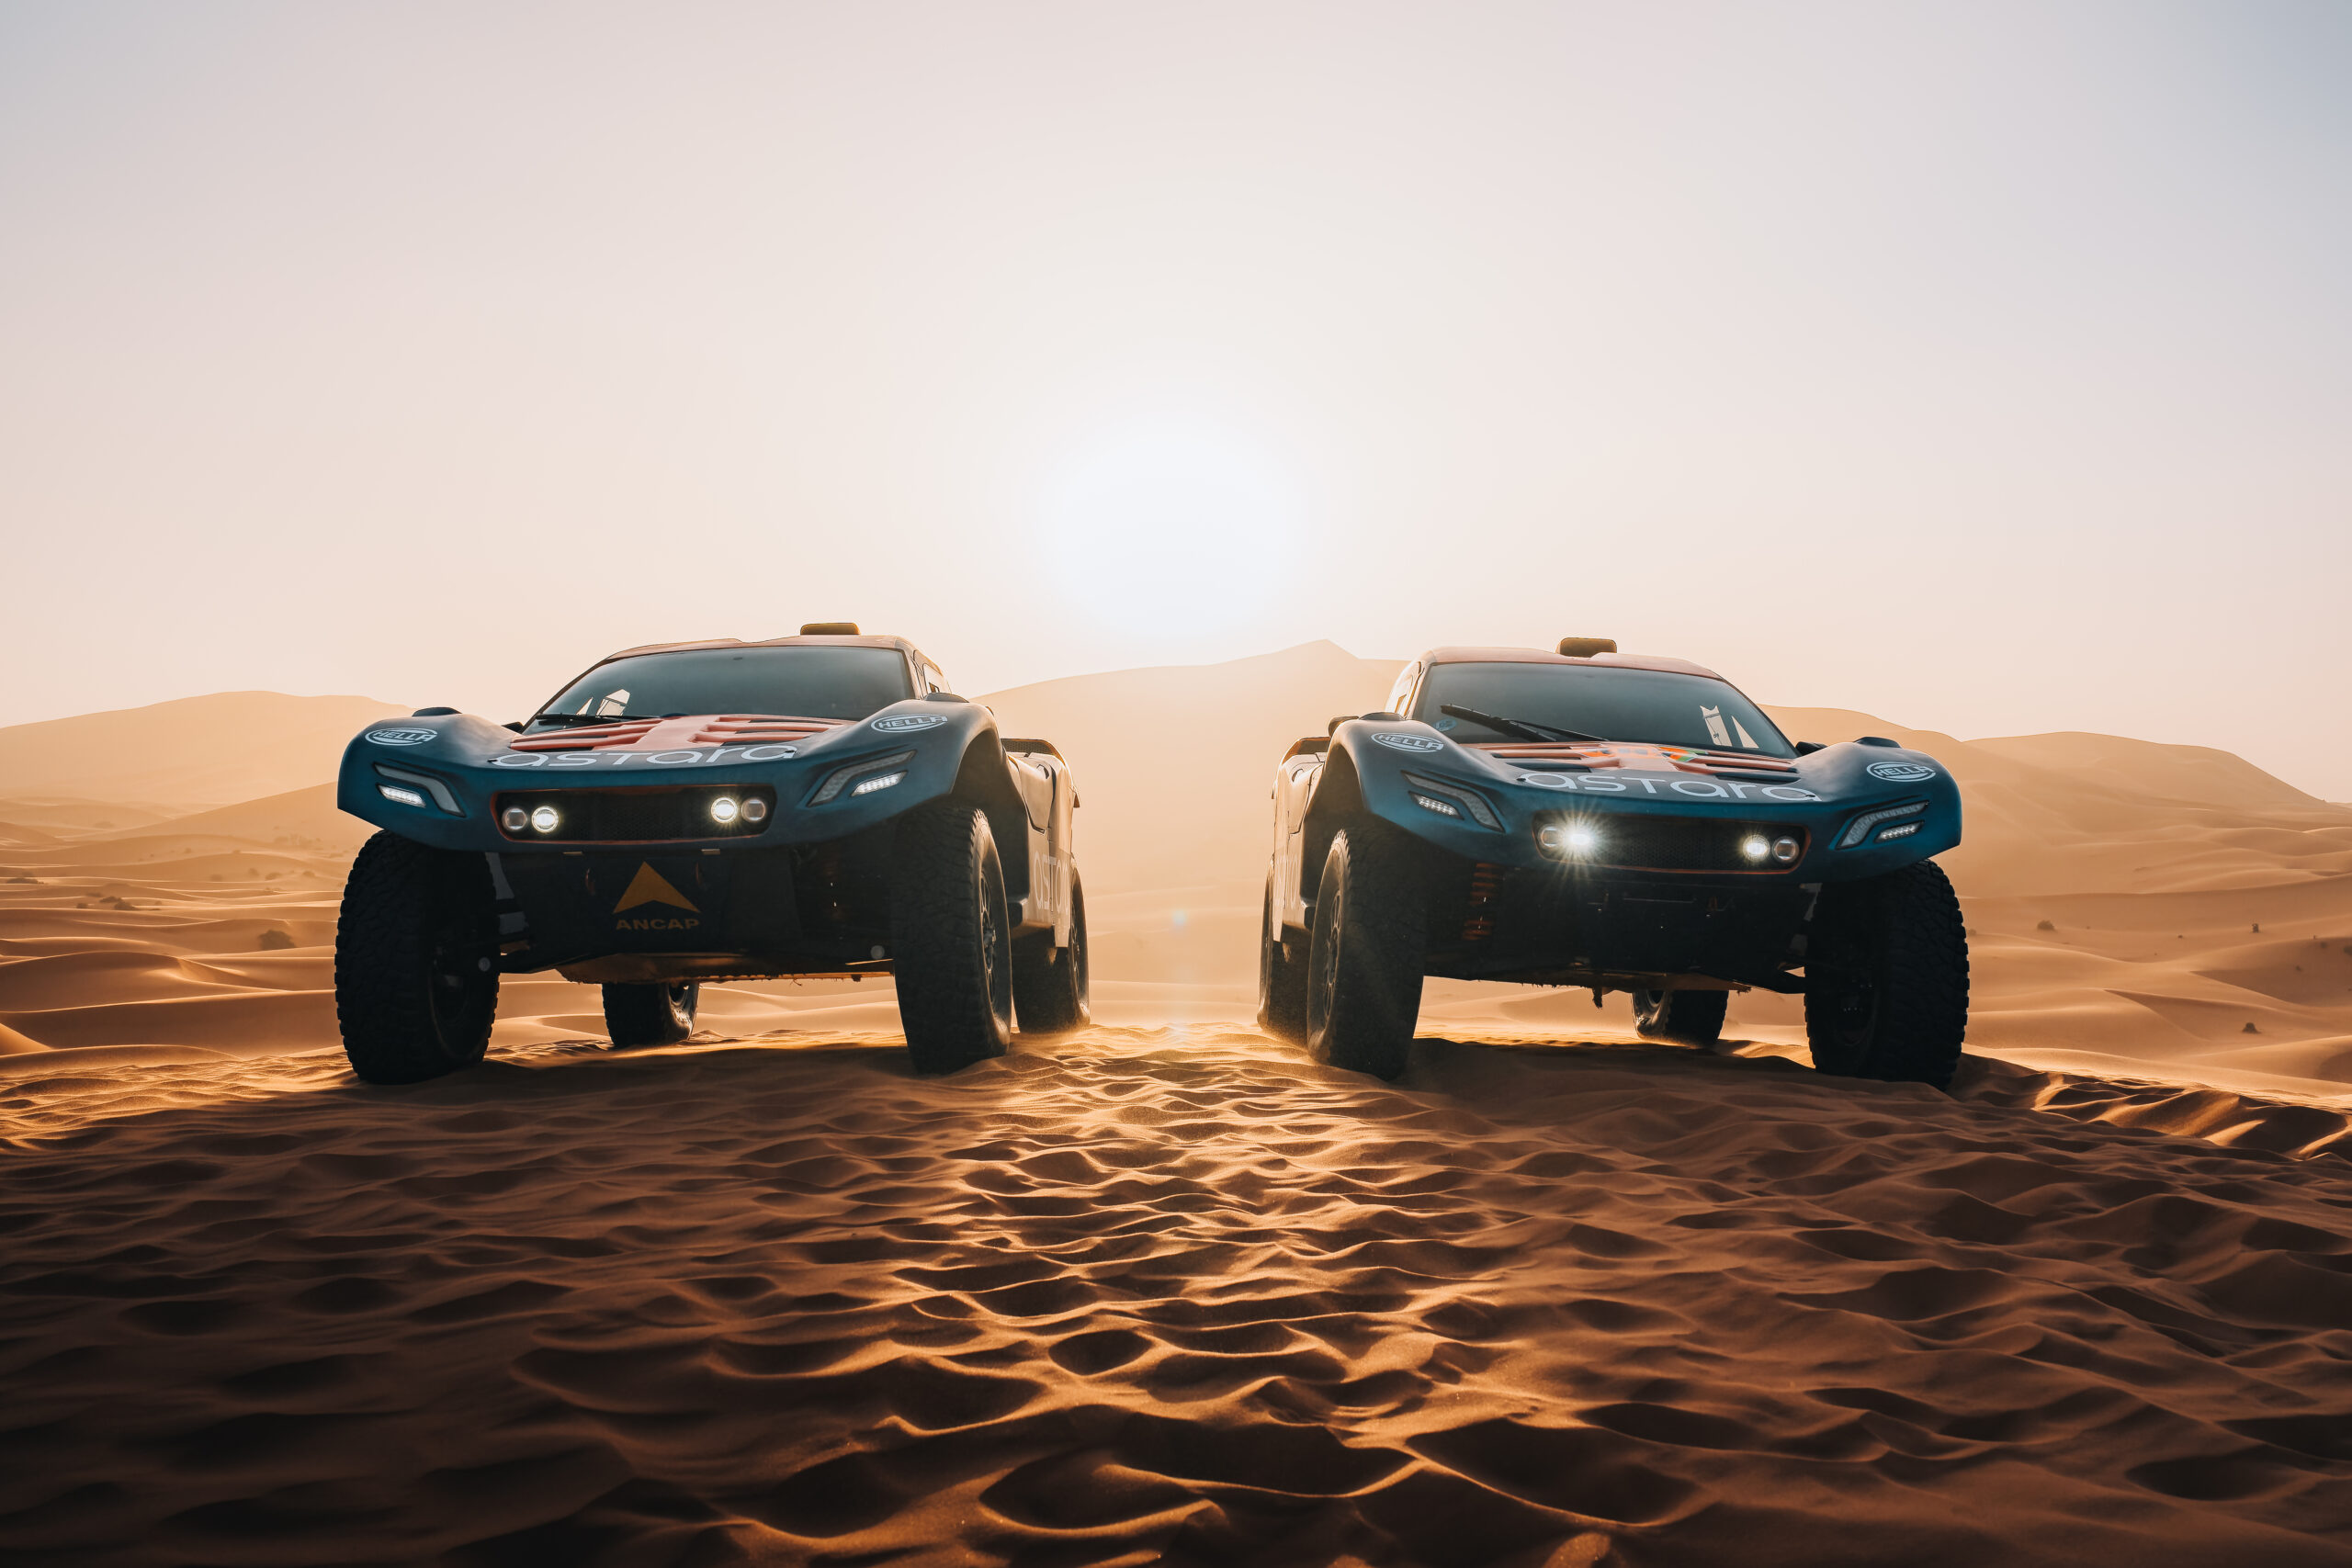 El astara Team llega con una evolución de su coche de competición, 01 Concept, al Dakar, el nuevo astara 02 Concept